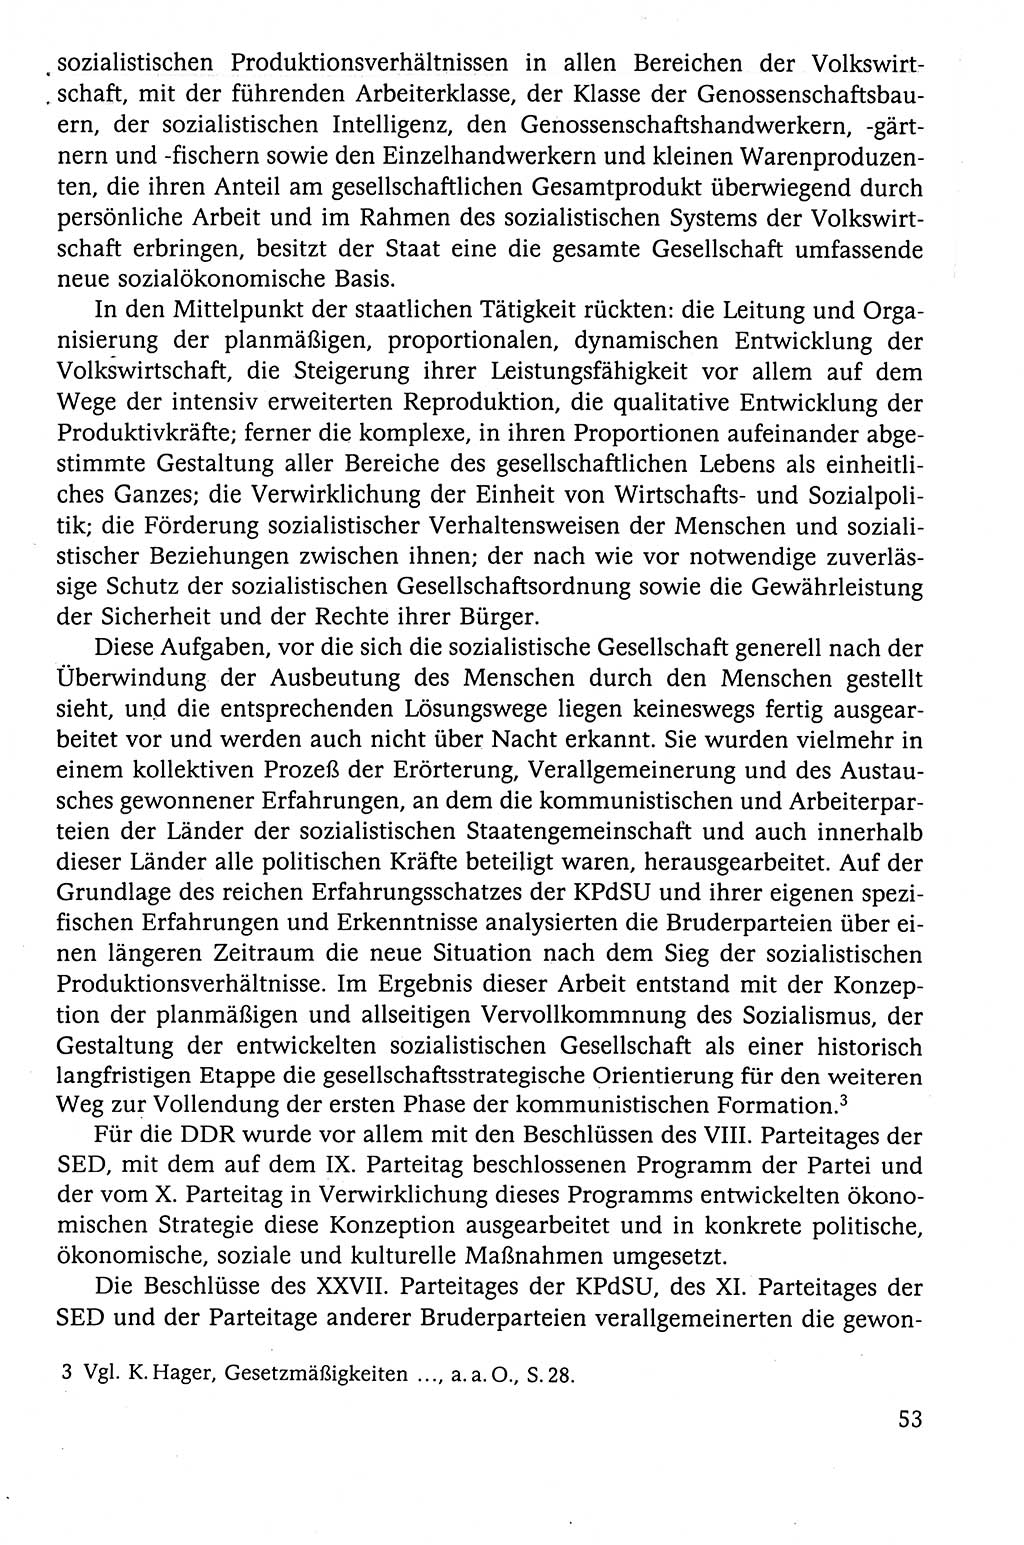 Der Staat im politischen System der DDR (Deutsche Demokratische Republik) 1986, Seite 53 (St. pol. Sys. DDR 1986, S. 53)